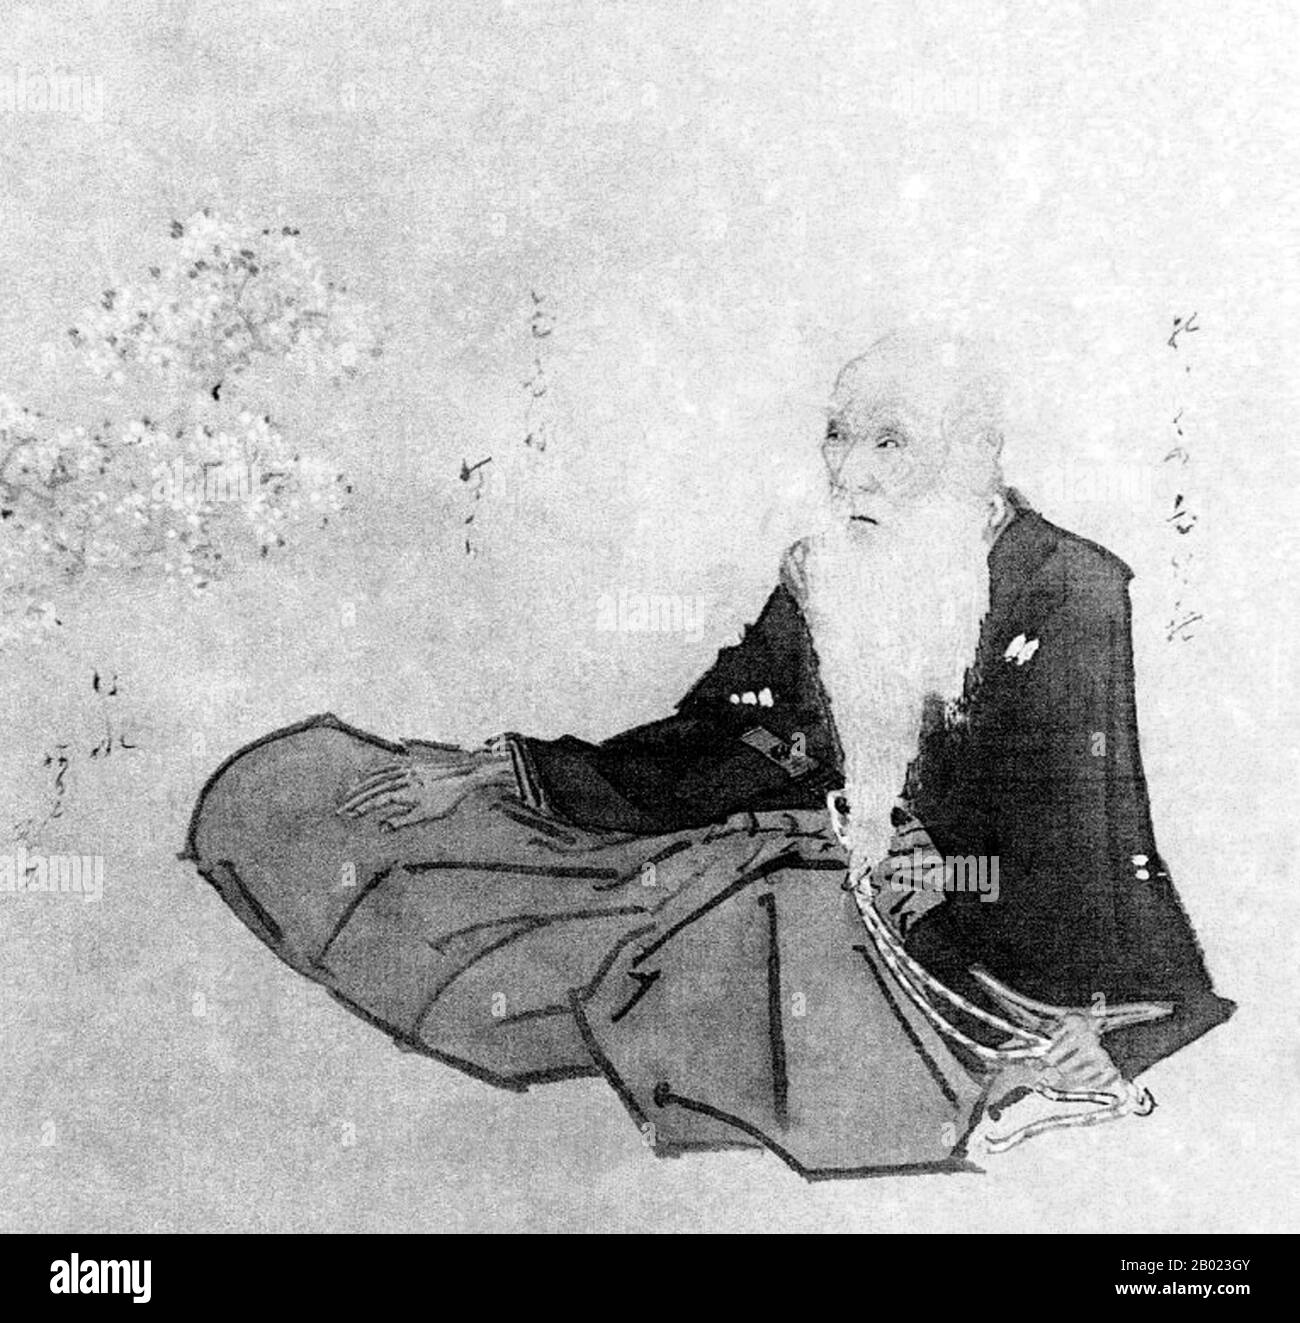 Kikuchi Yōsai (菊池 容斎, 28 de noviembre de 1781 - 16 de junio de 1878), también conocido como Kikuchi Takeyasu y Kawahara Ryōhei fue un pintor japonés más famoso por sus retratos monocromos de figuras históricas. Foto de stock